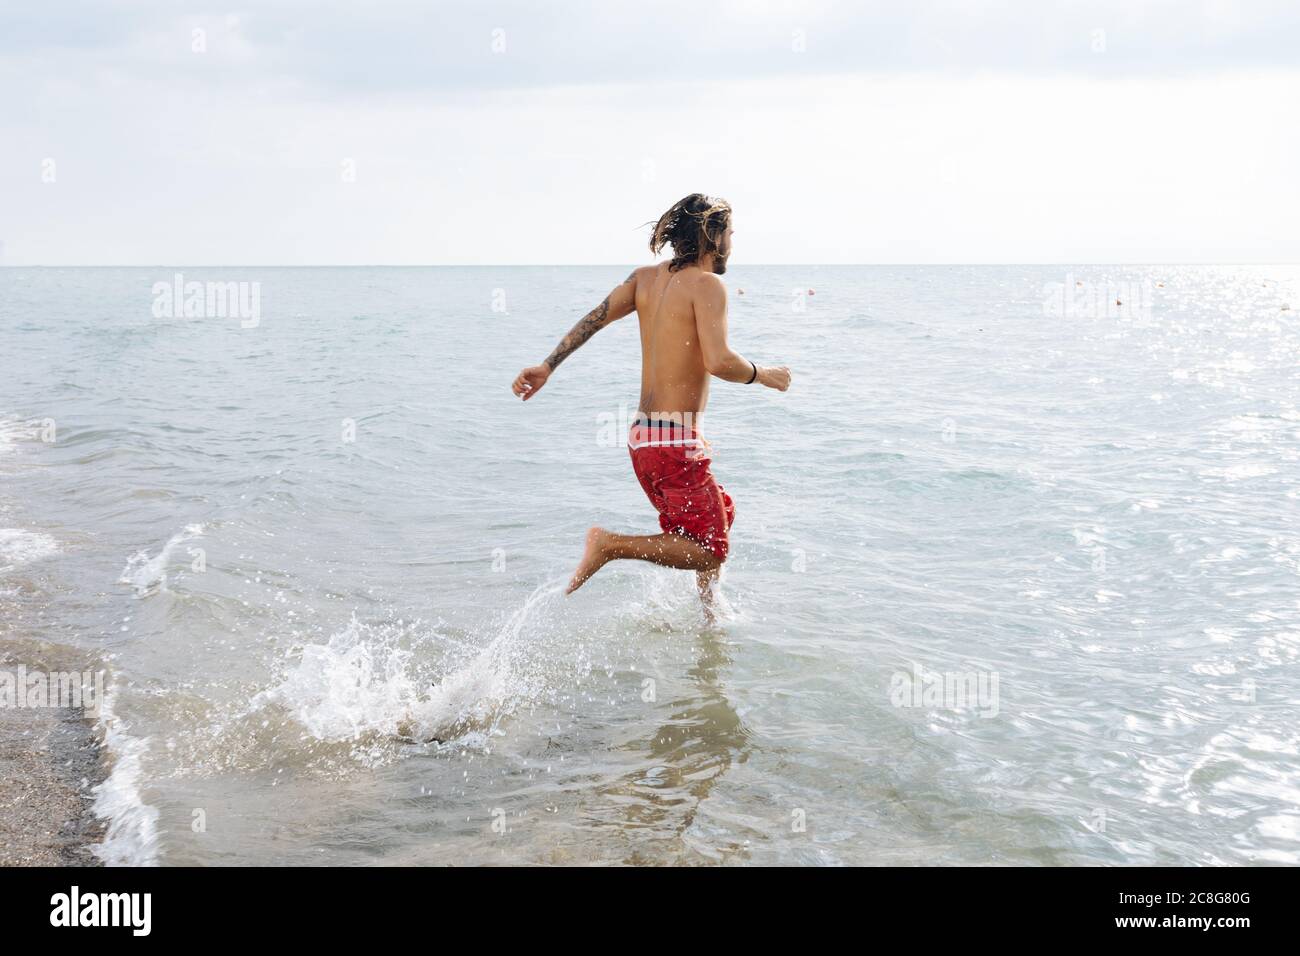 Man running into sea Stock Photo